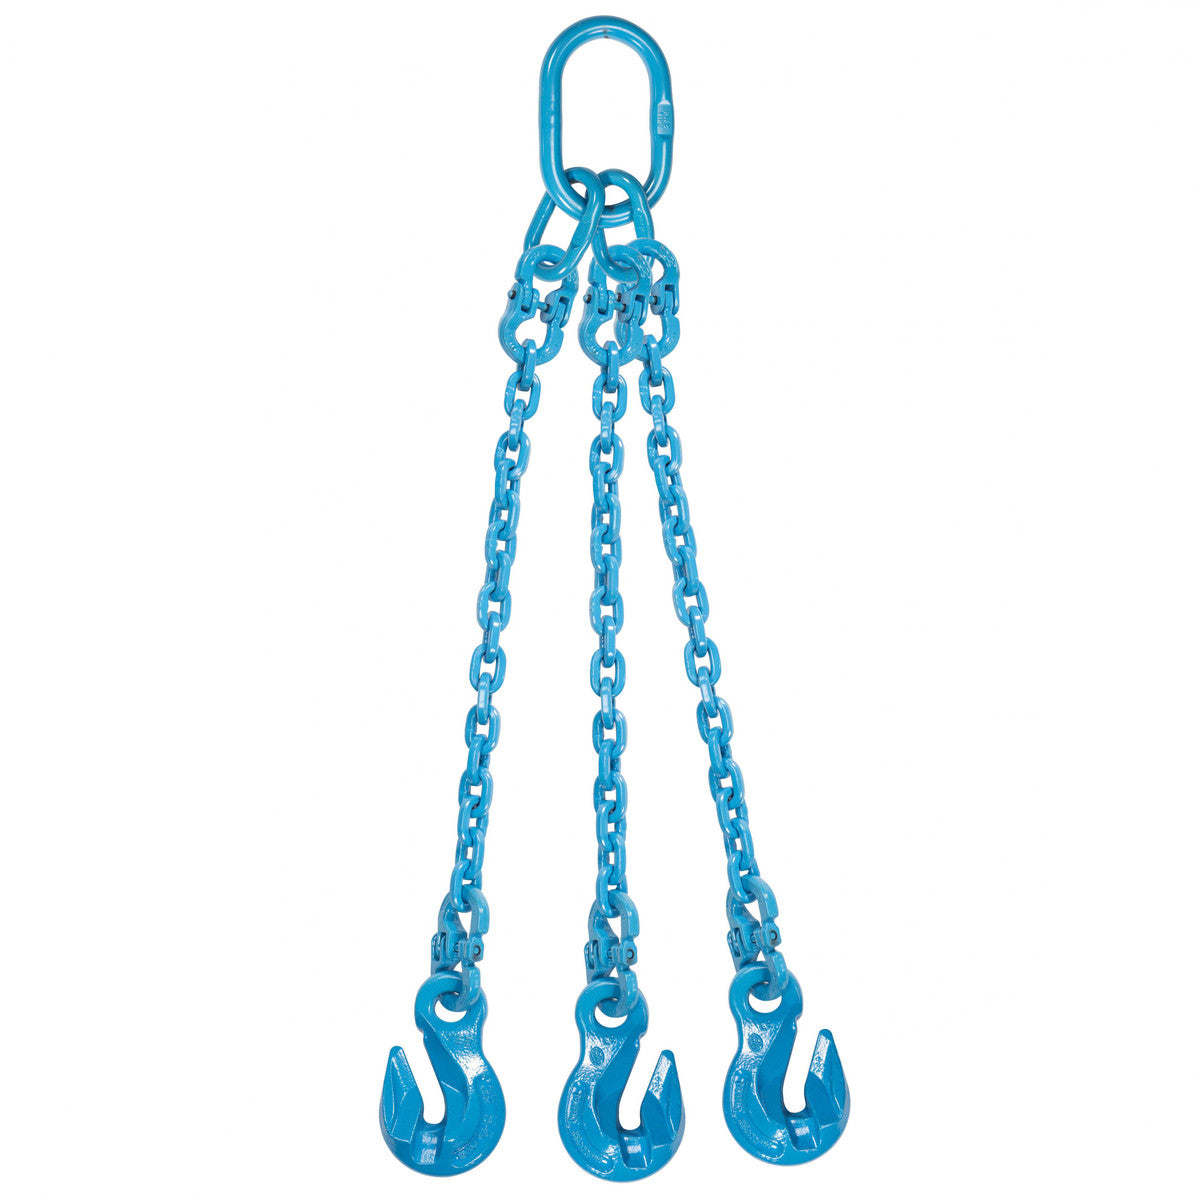 9/32" x 8' - Pewag 3 Leg Chain Sling w/ Grab Hooks - Grade 120